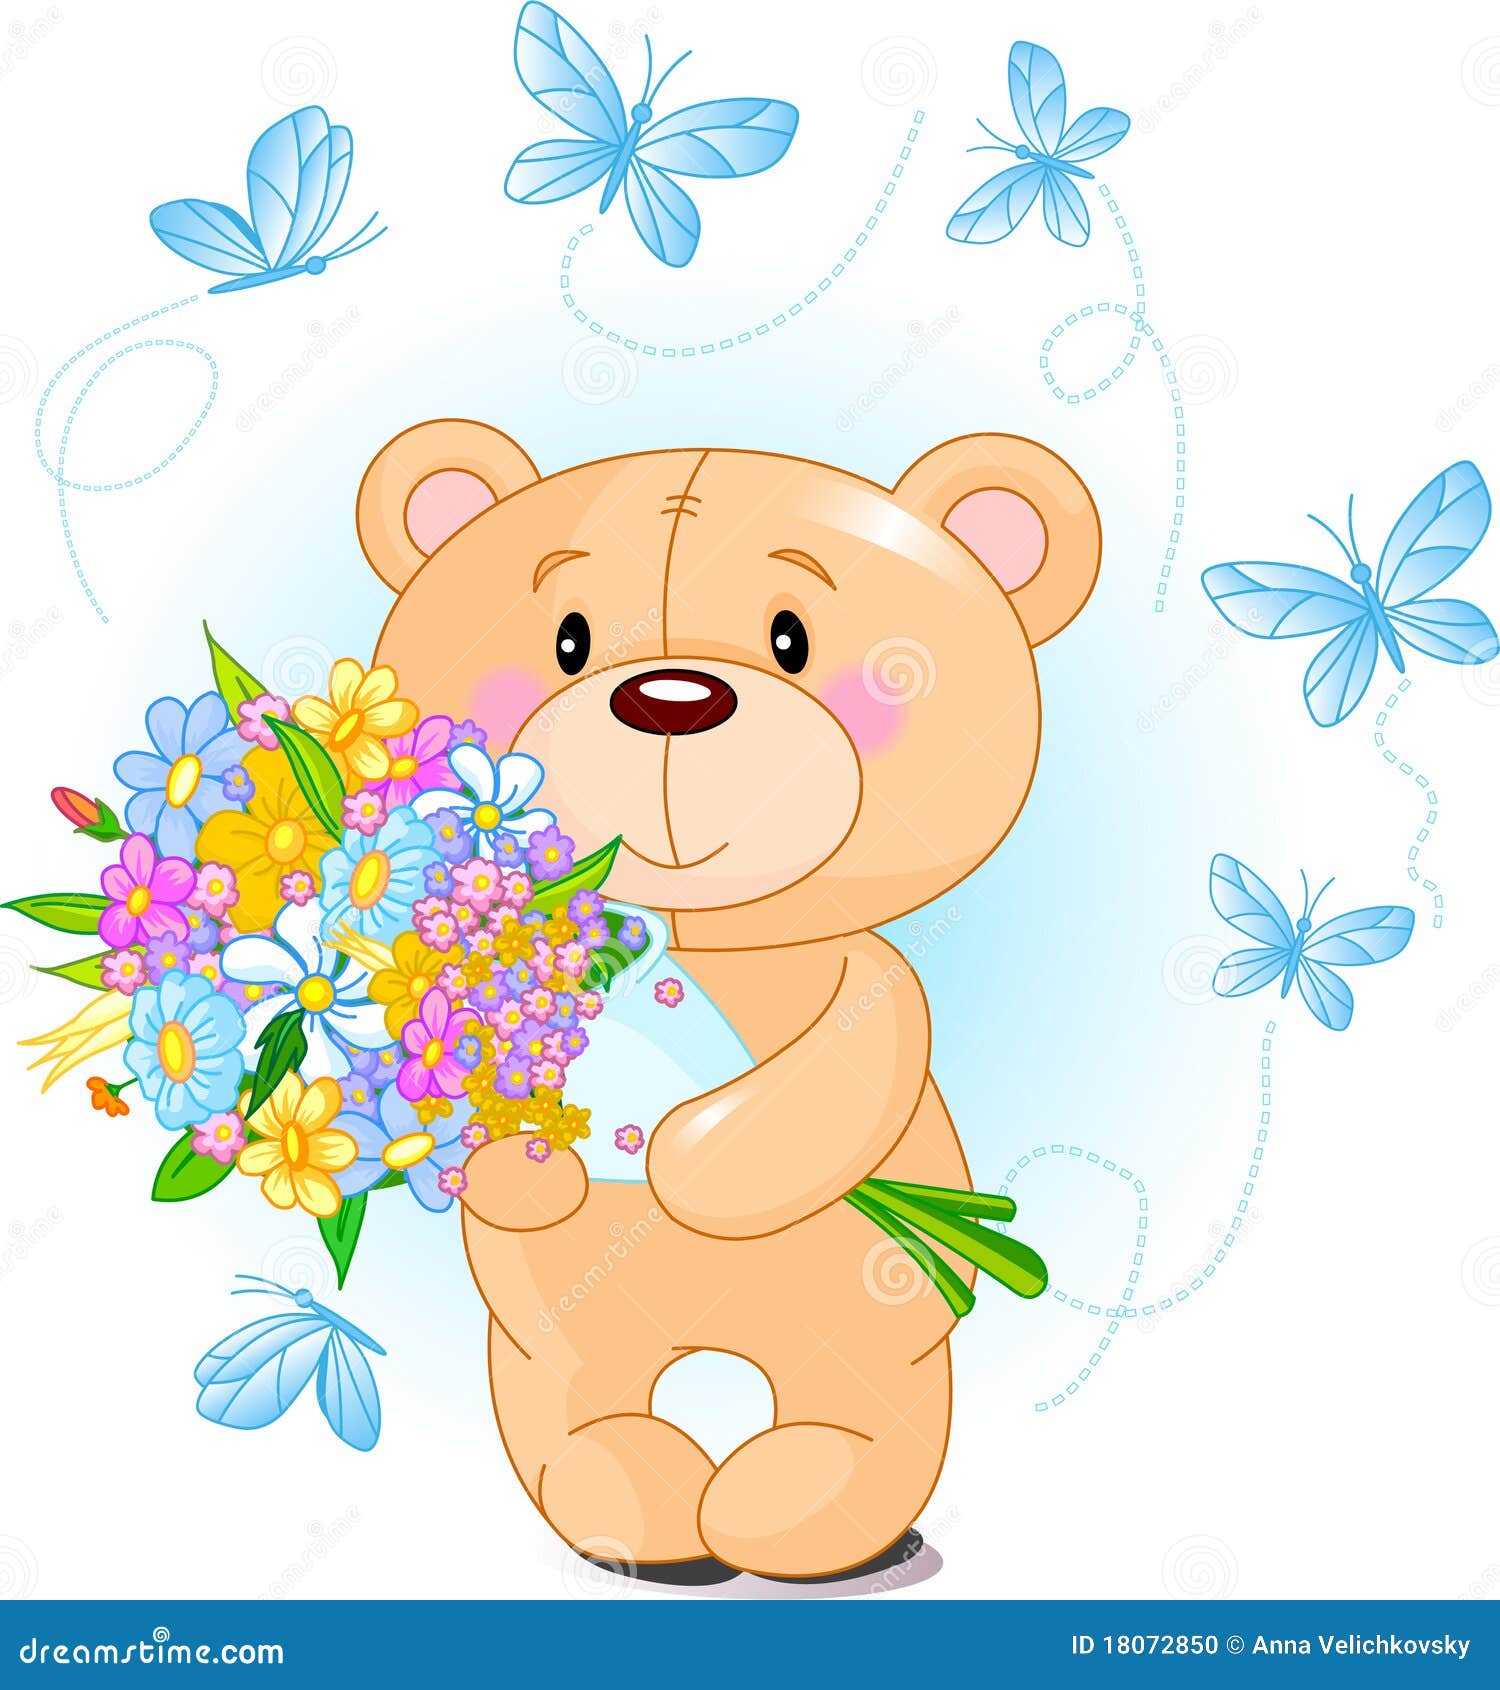 teddy bear with flowers clipart - photo #26